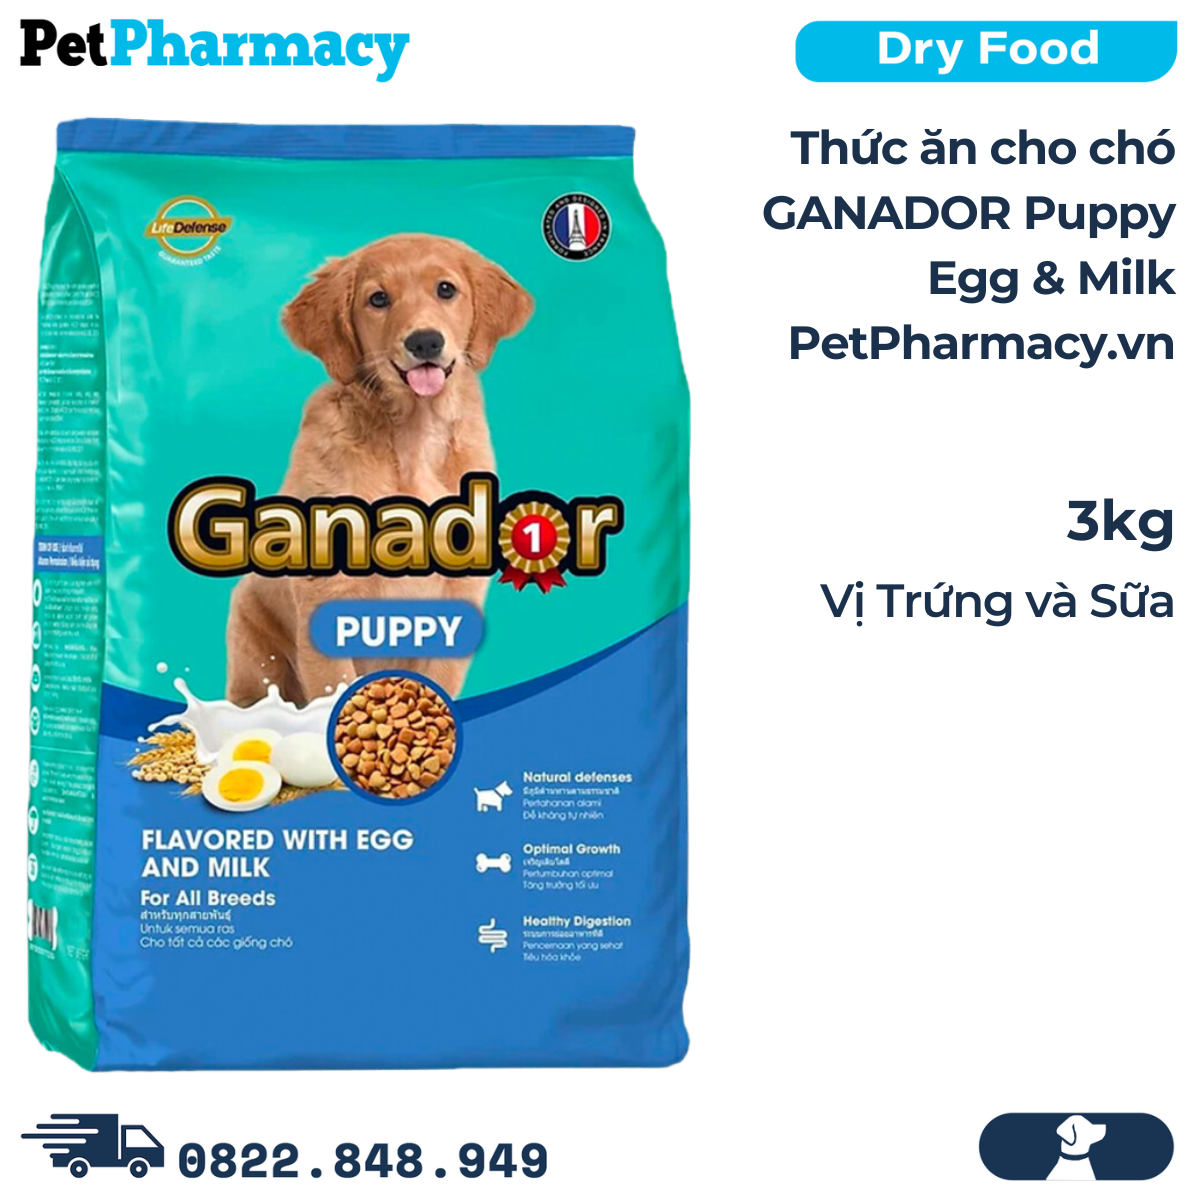 Thức ăn cho chó GANADOR Puppy 3kg - Egg & Milk